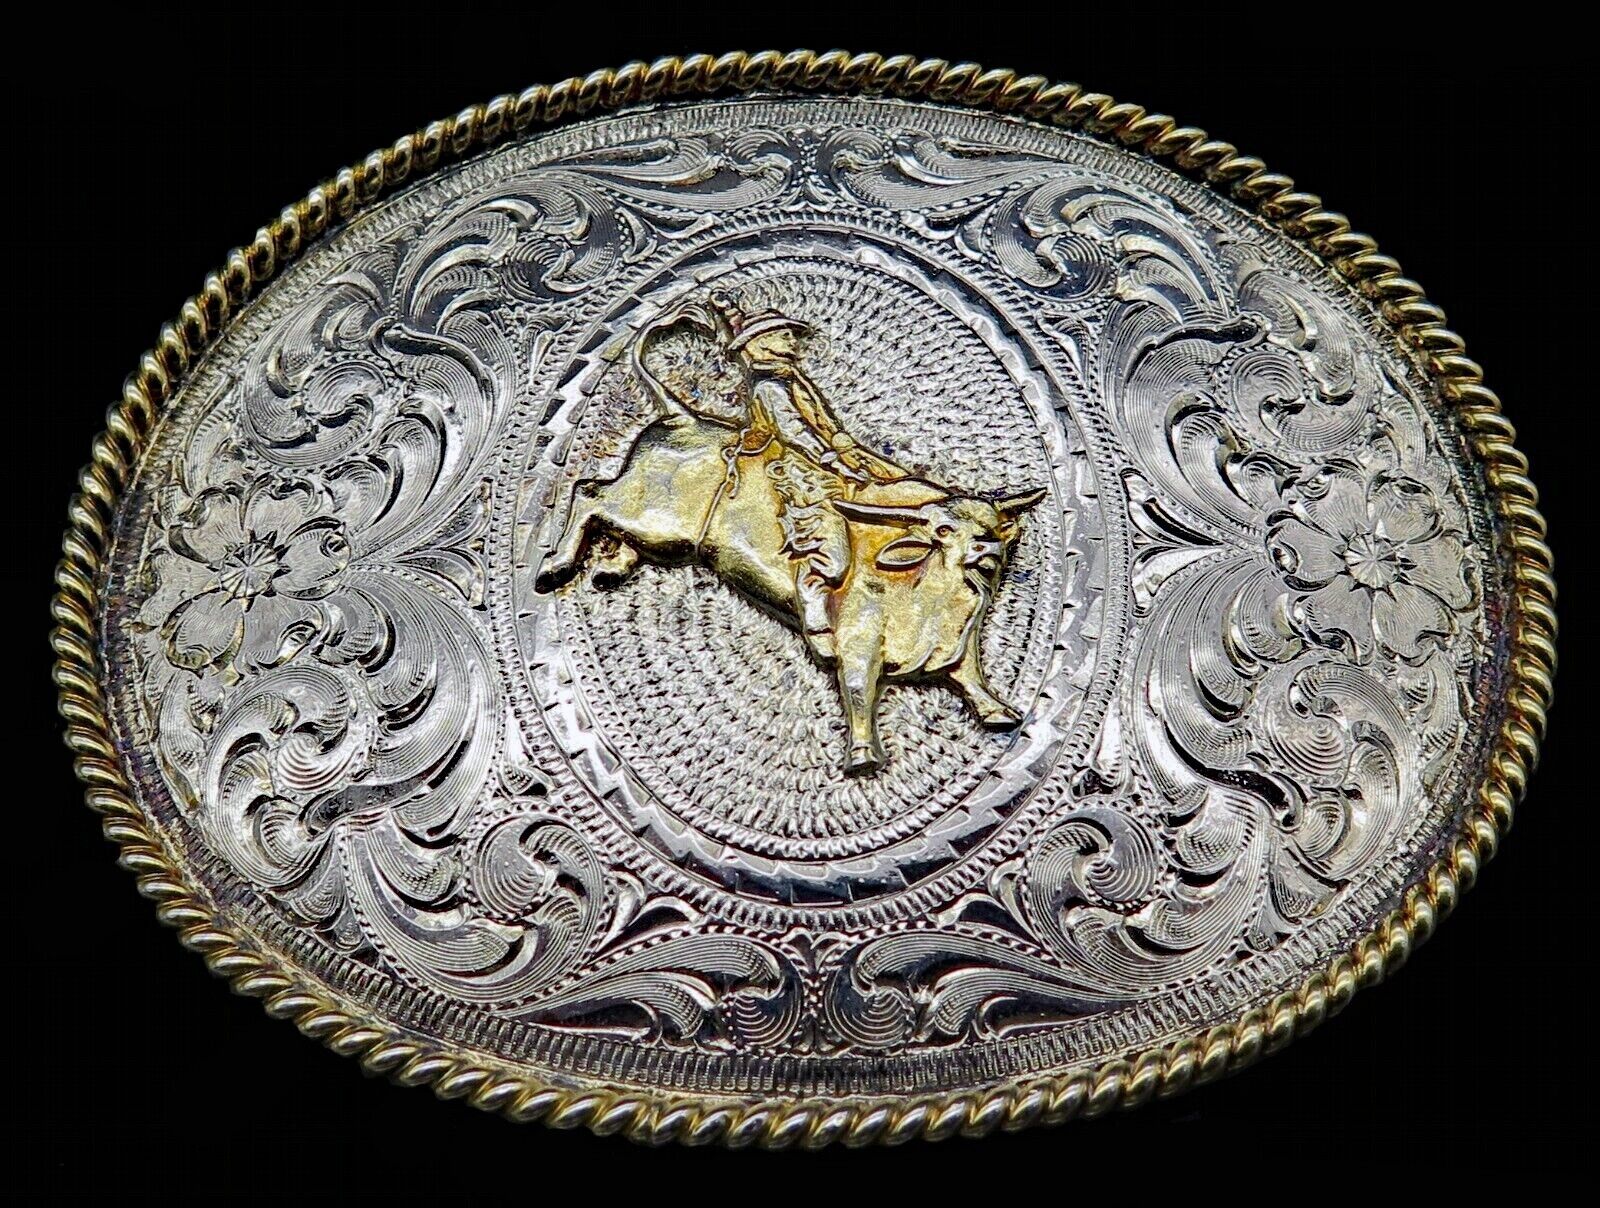 Rodeo Cowboy Bull Rider RA Guthrie Handmade Belt Buckle